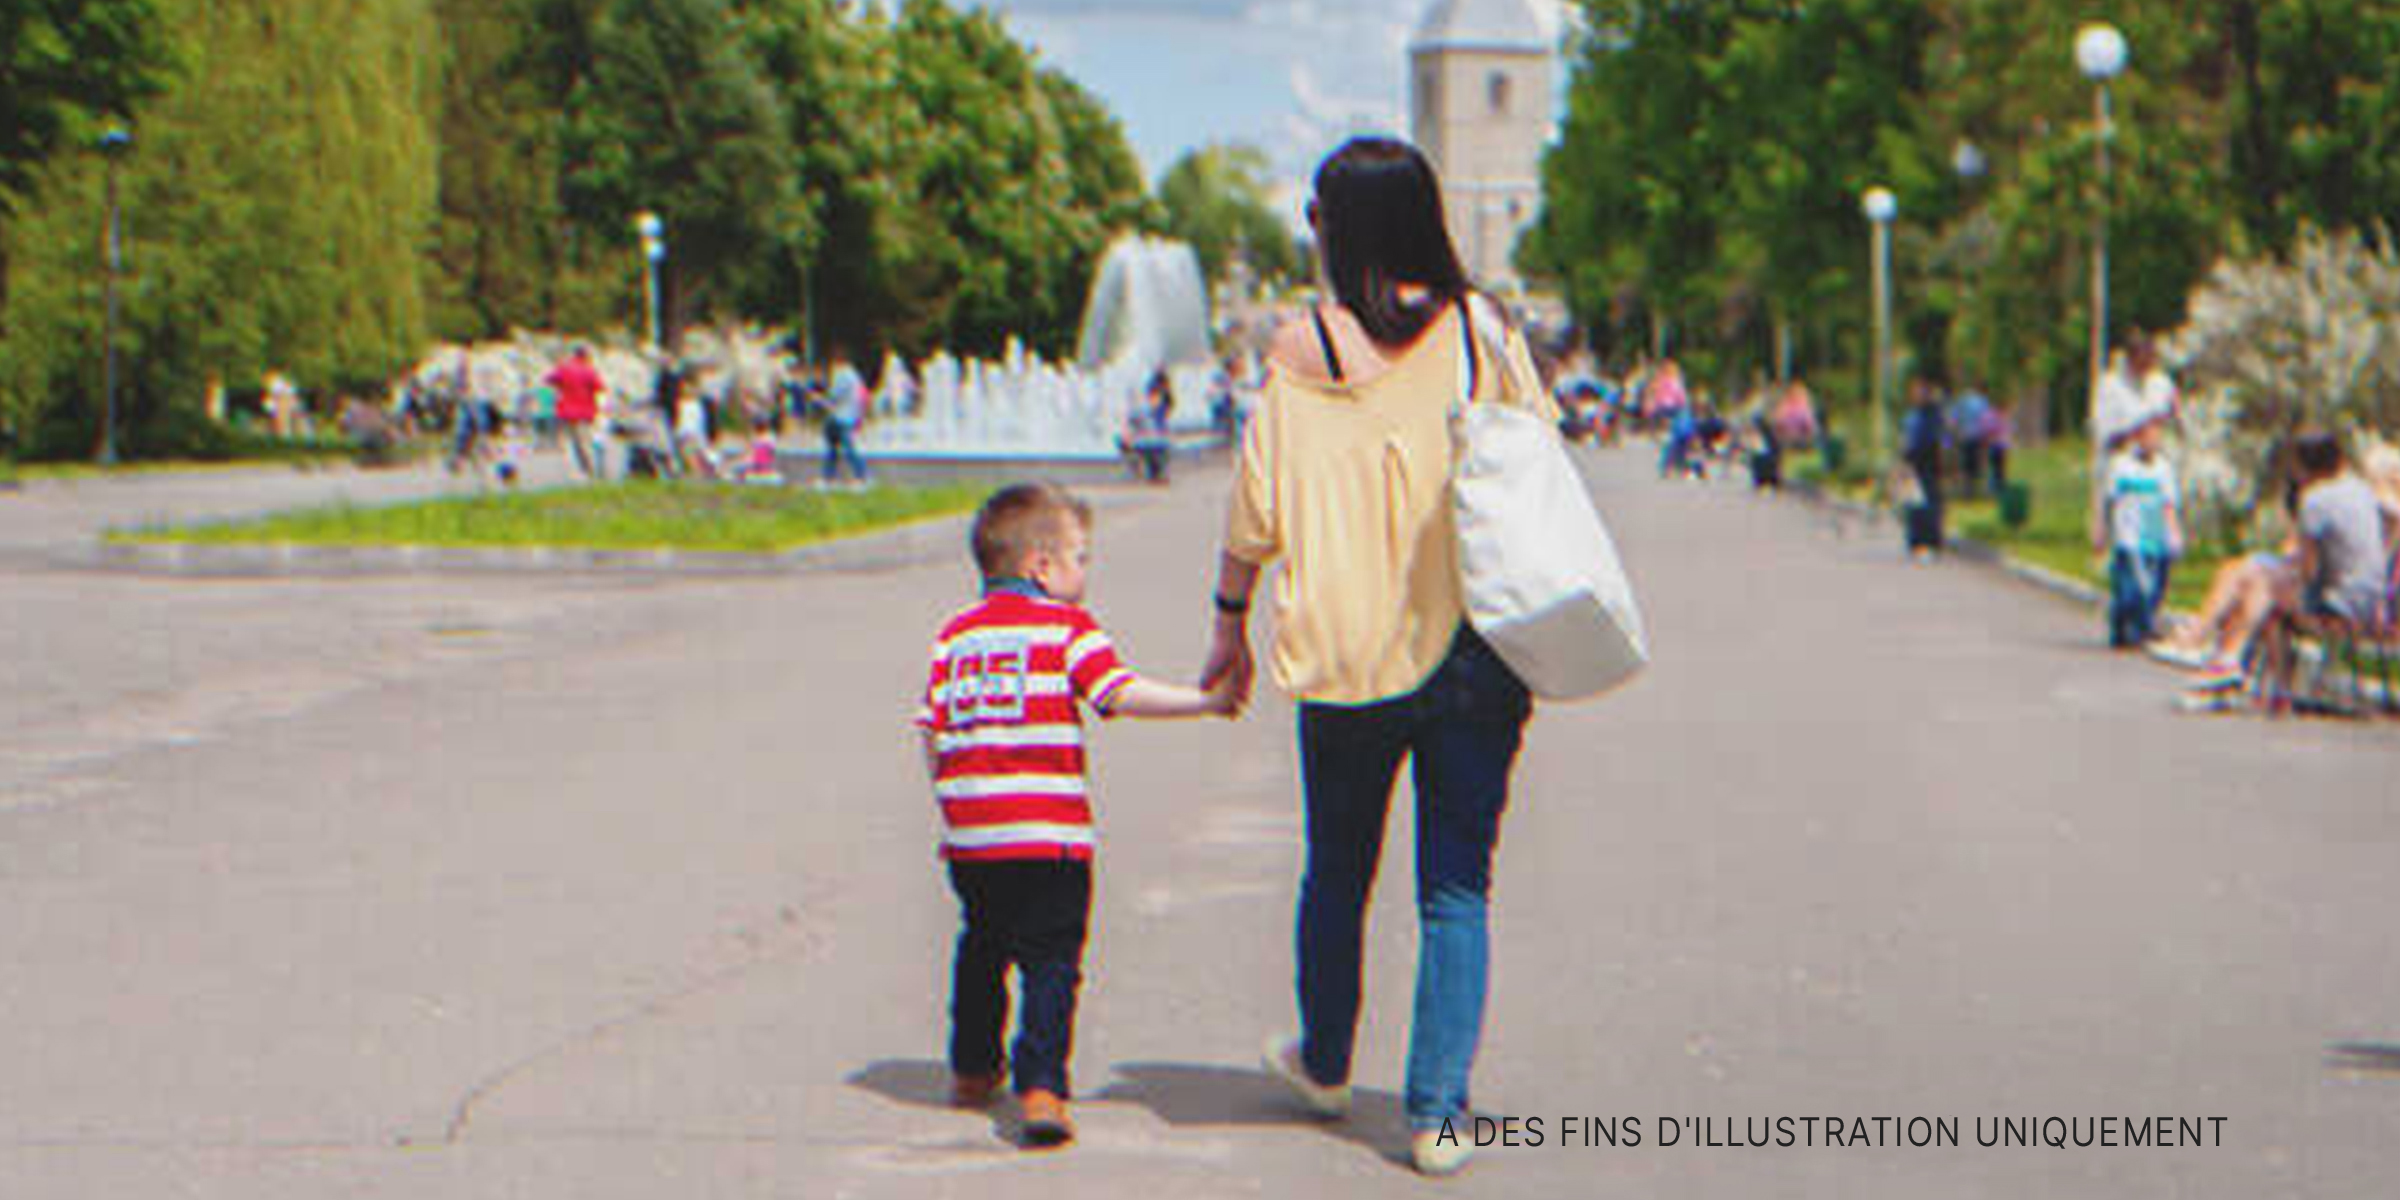 Une femme marchant avec un enfant dans une rue | Source : Shutterstock